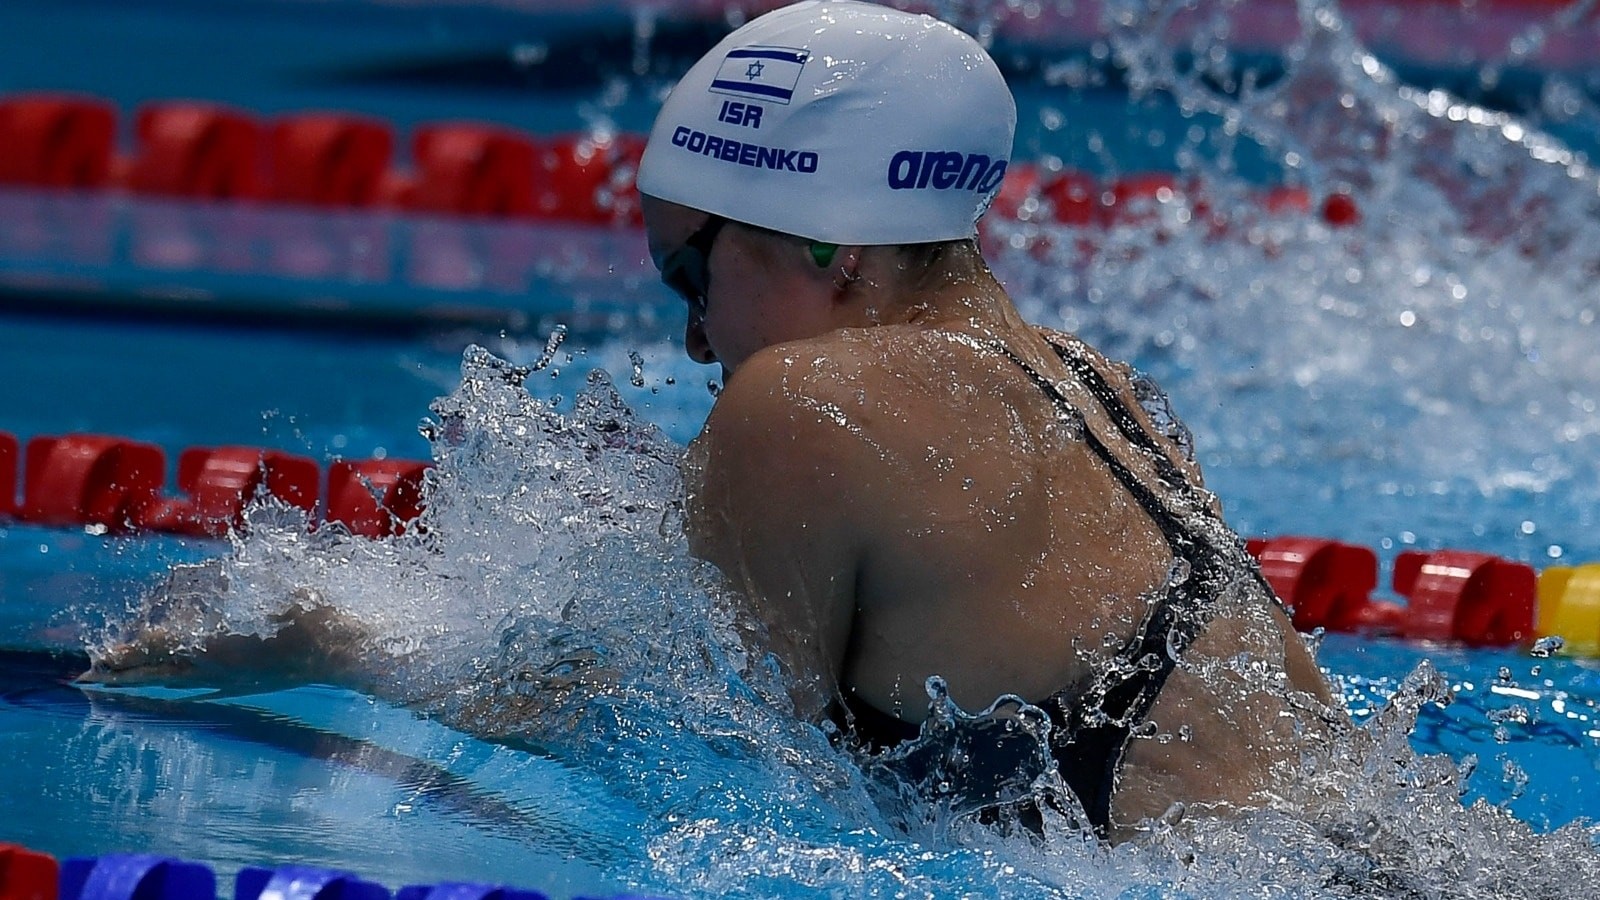 Photo of Anastasiya Gorbenko in Abu Dhabi courtesy of the Israel Olympic Committee